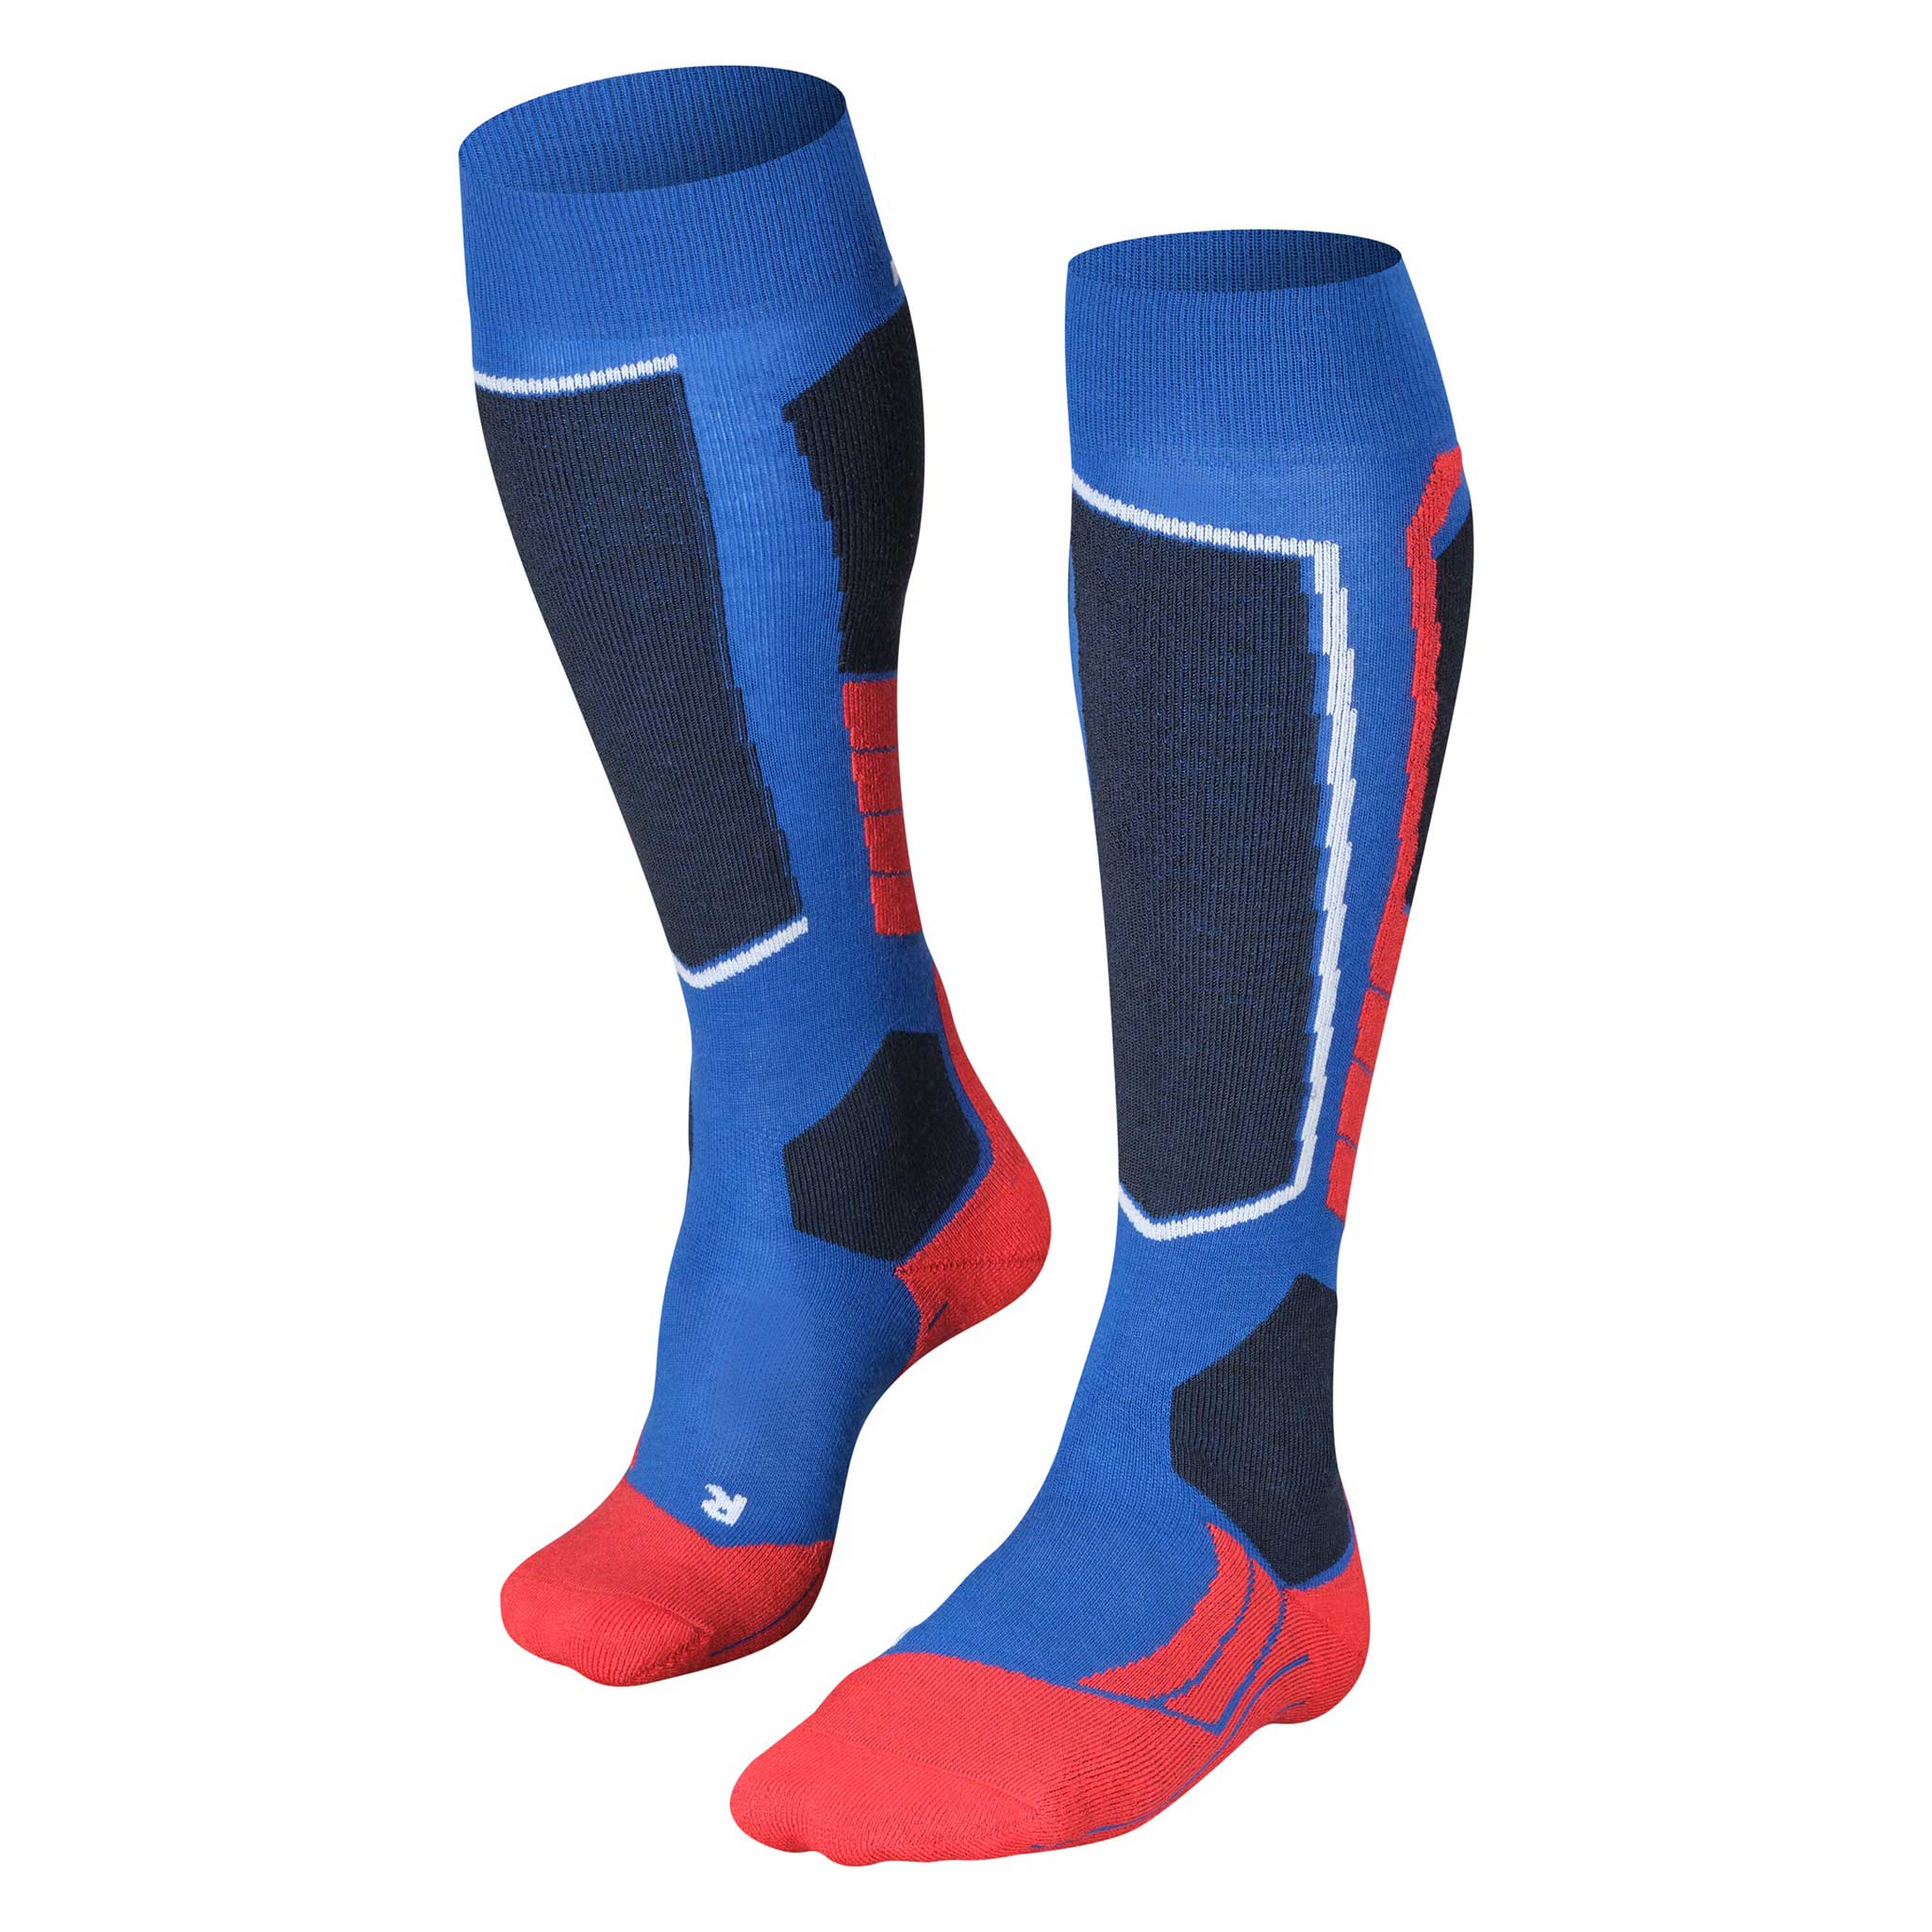 SK2 Men’s Ski Socks in Olympic Blue